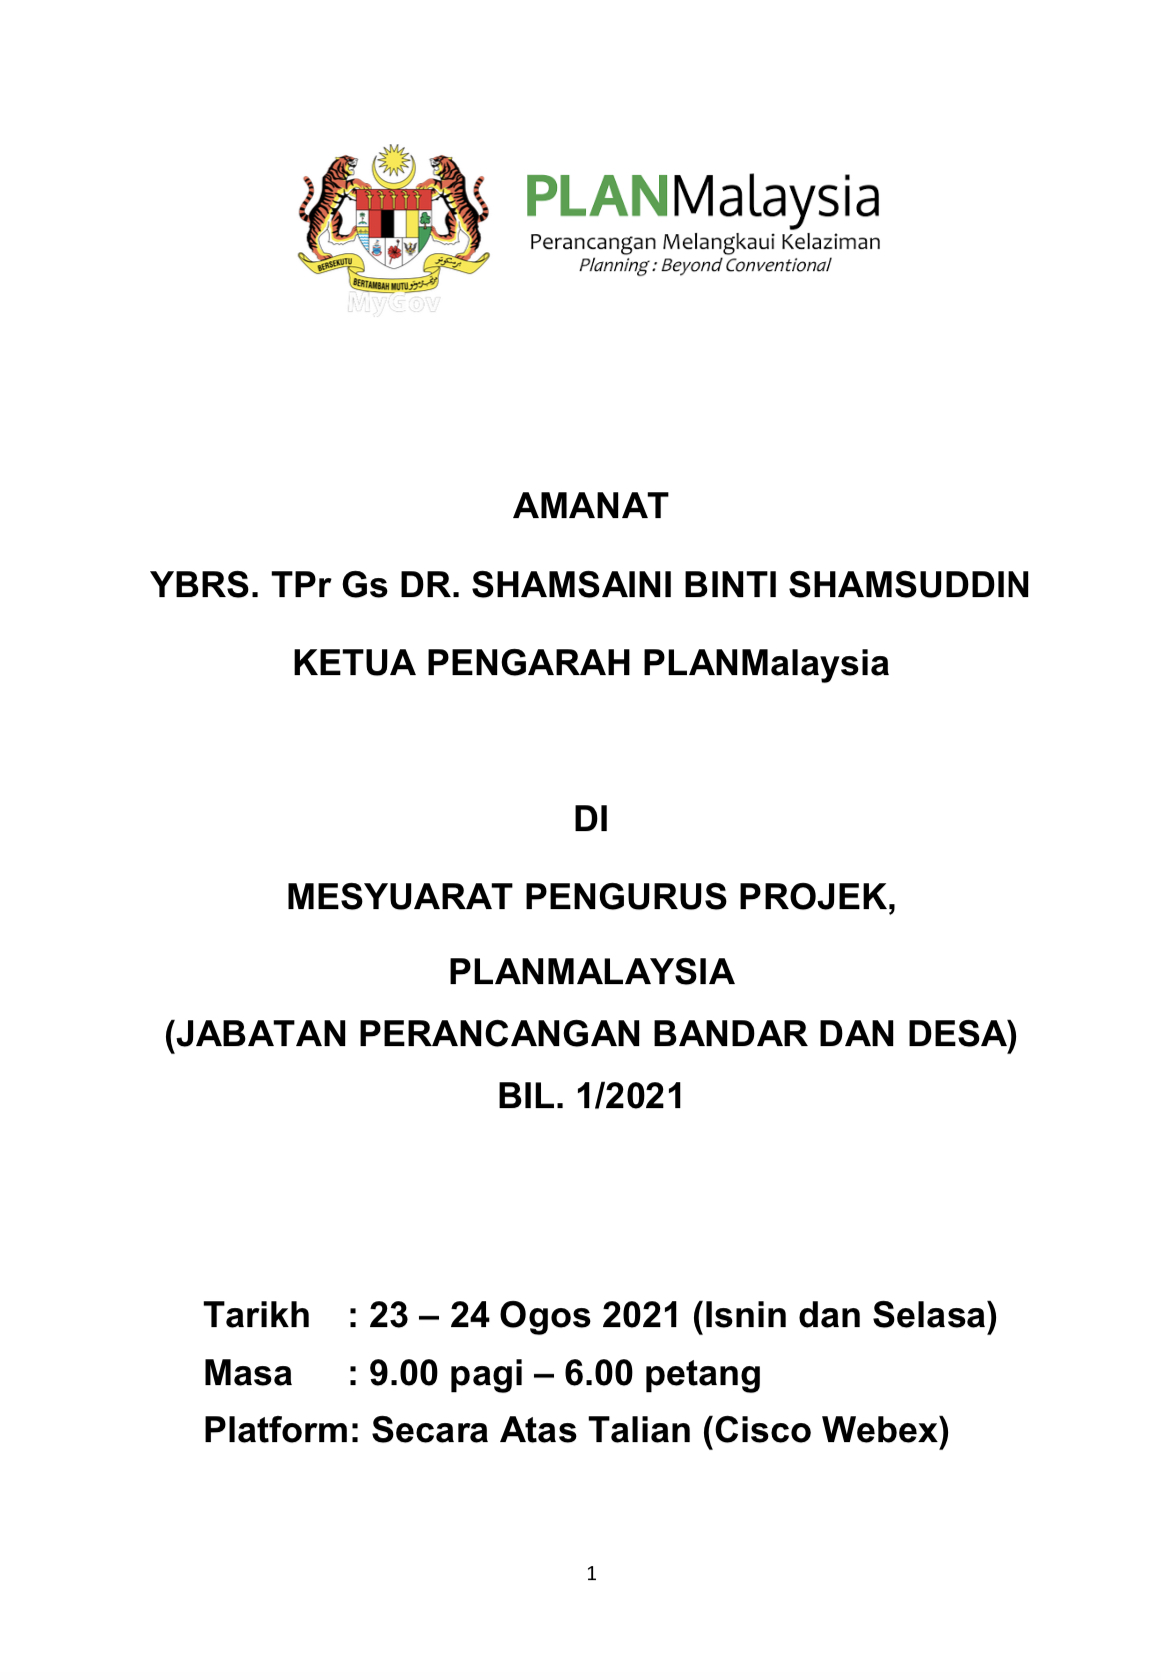 Mesyuarat Pengurus Projek PLANMalaysia 